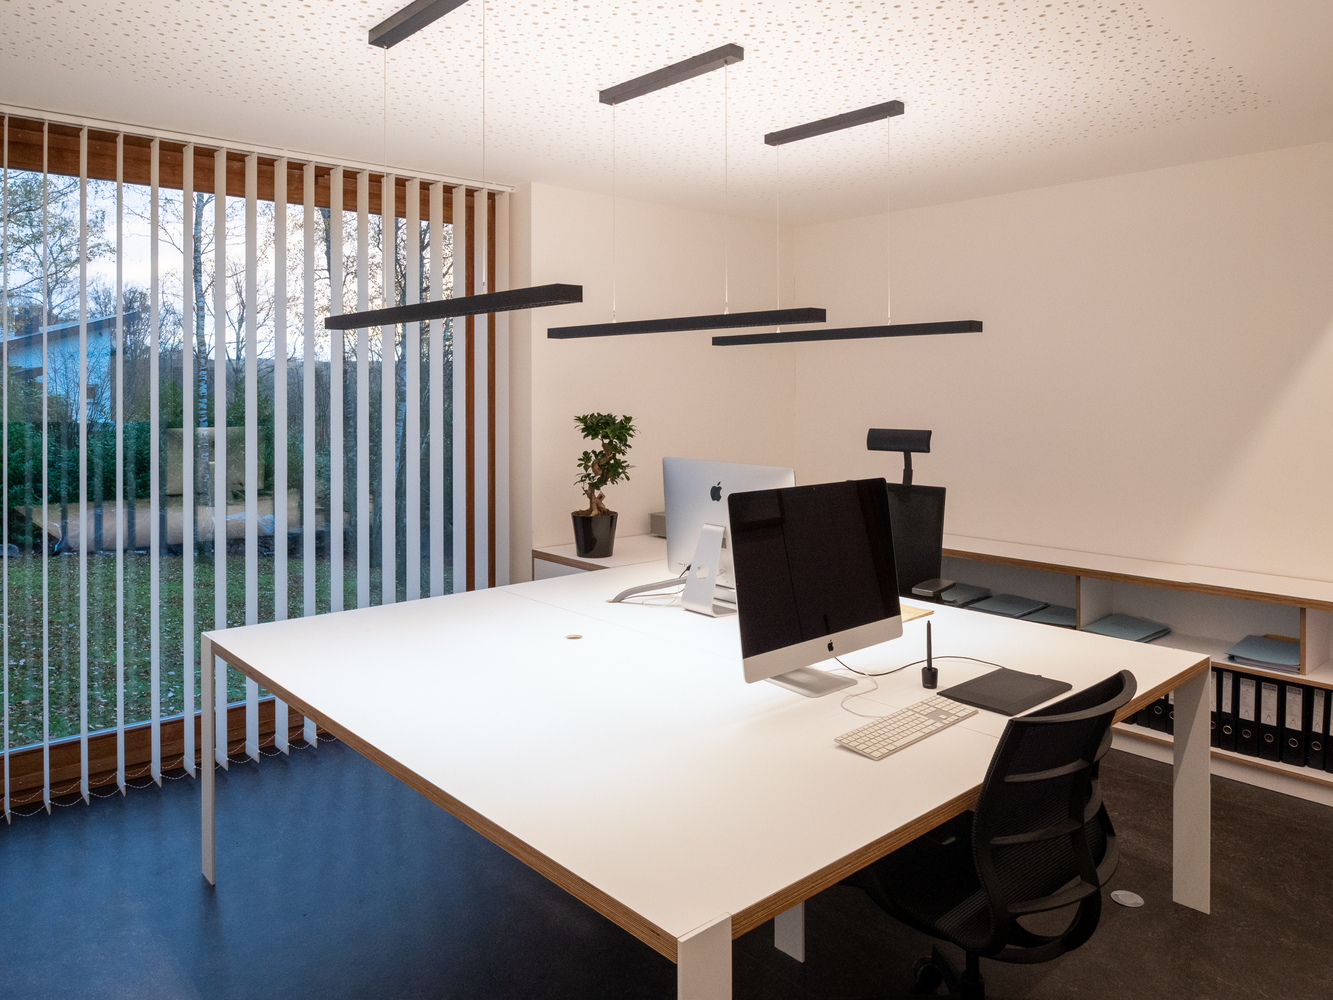 Bên trong là không gian dành cho phòng họp và các phòng kỹ thuật của một studio kiến trúc. 